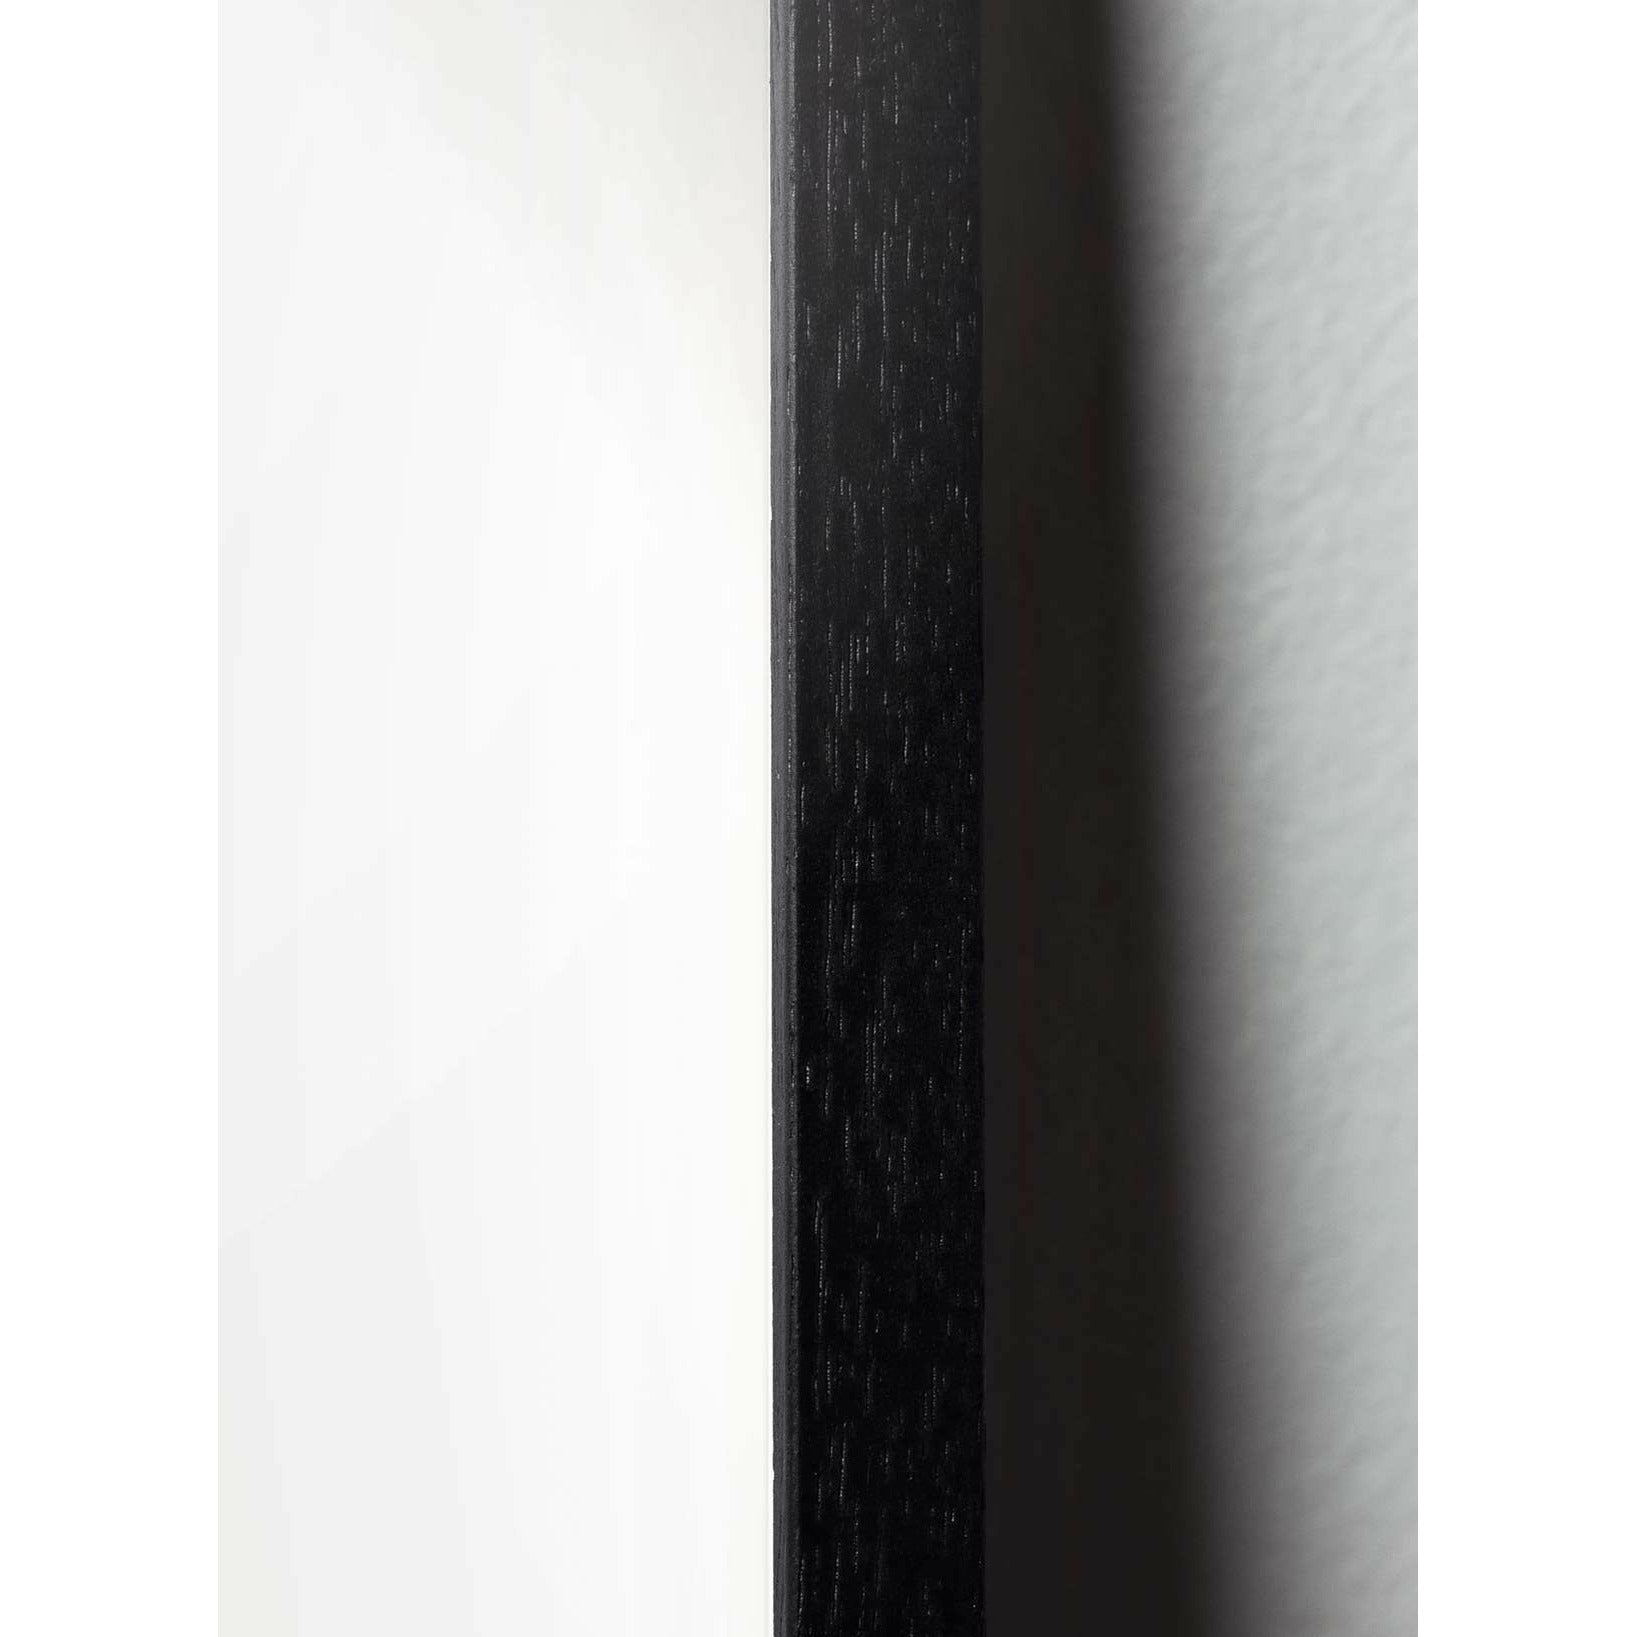 Póster clásico de Snowdrop de creación, marco en madera lacada negra de 30x40 cm, fondo azul oscuro